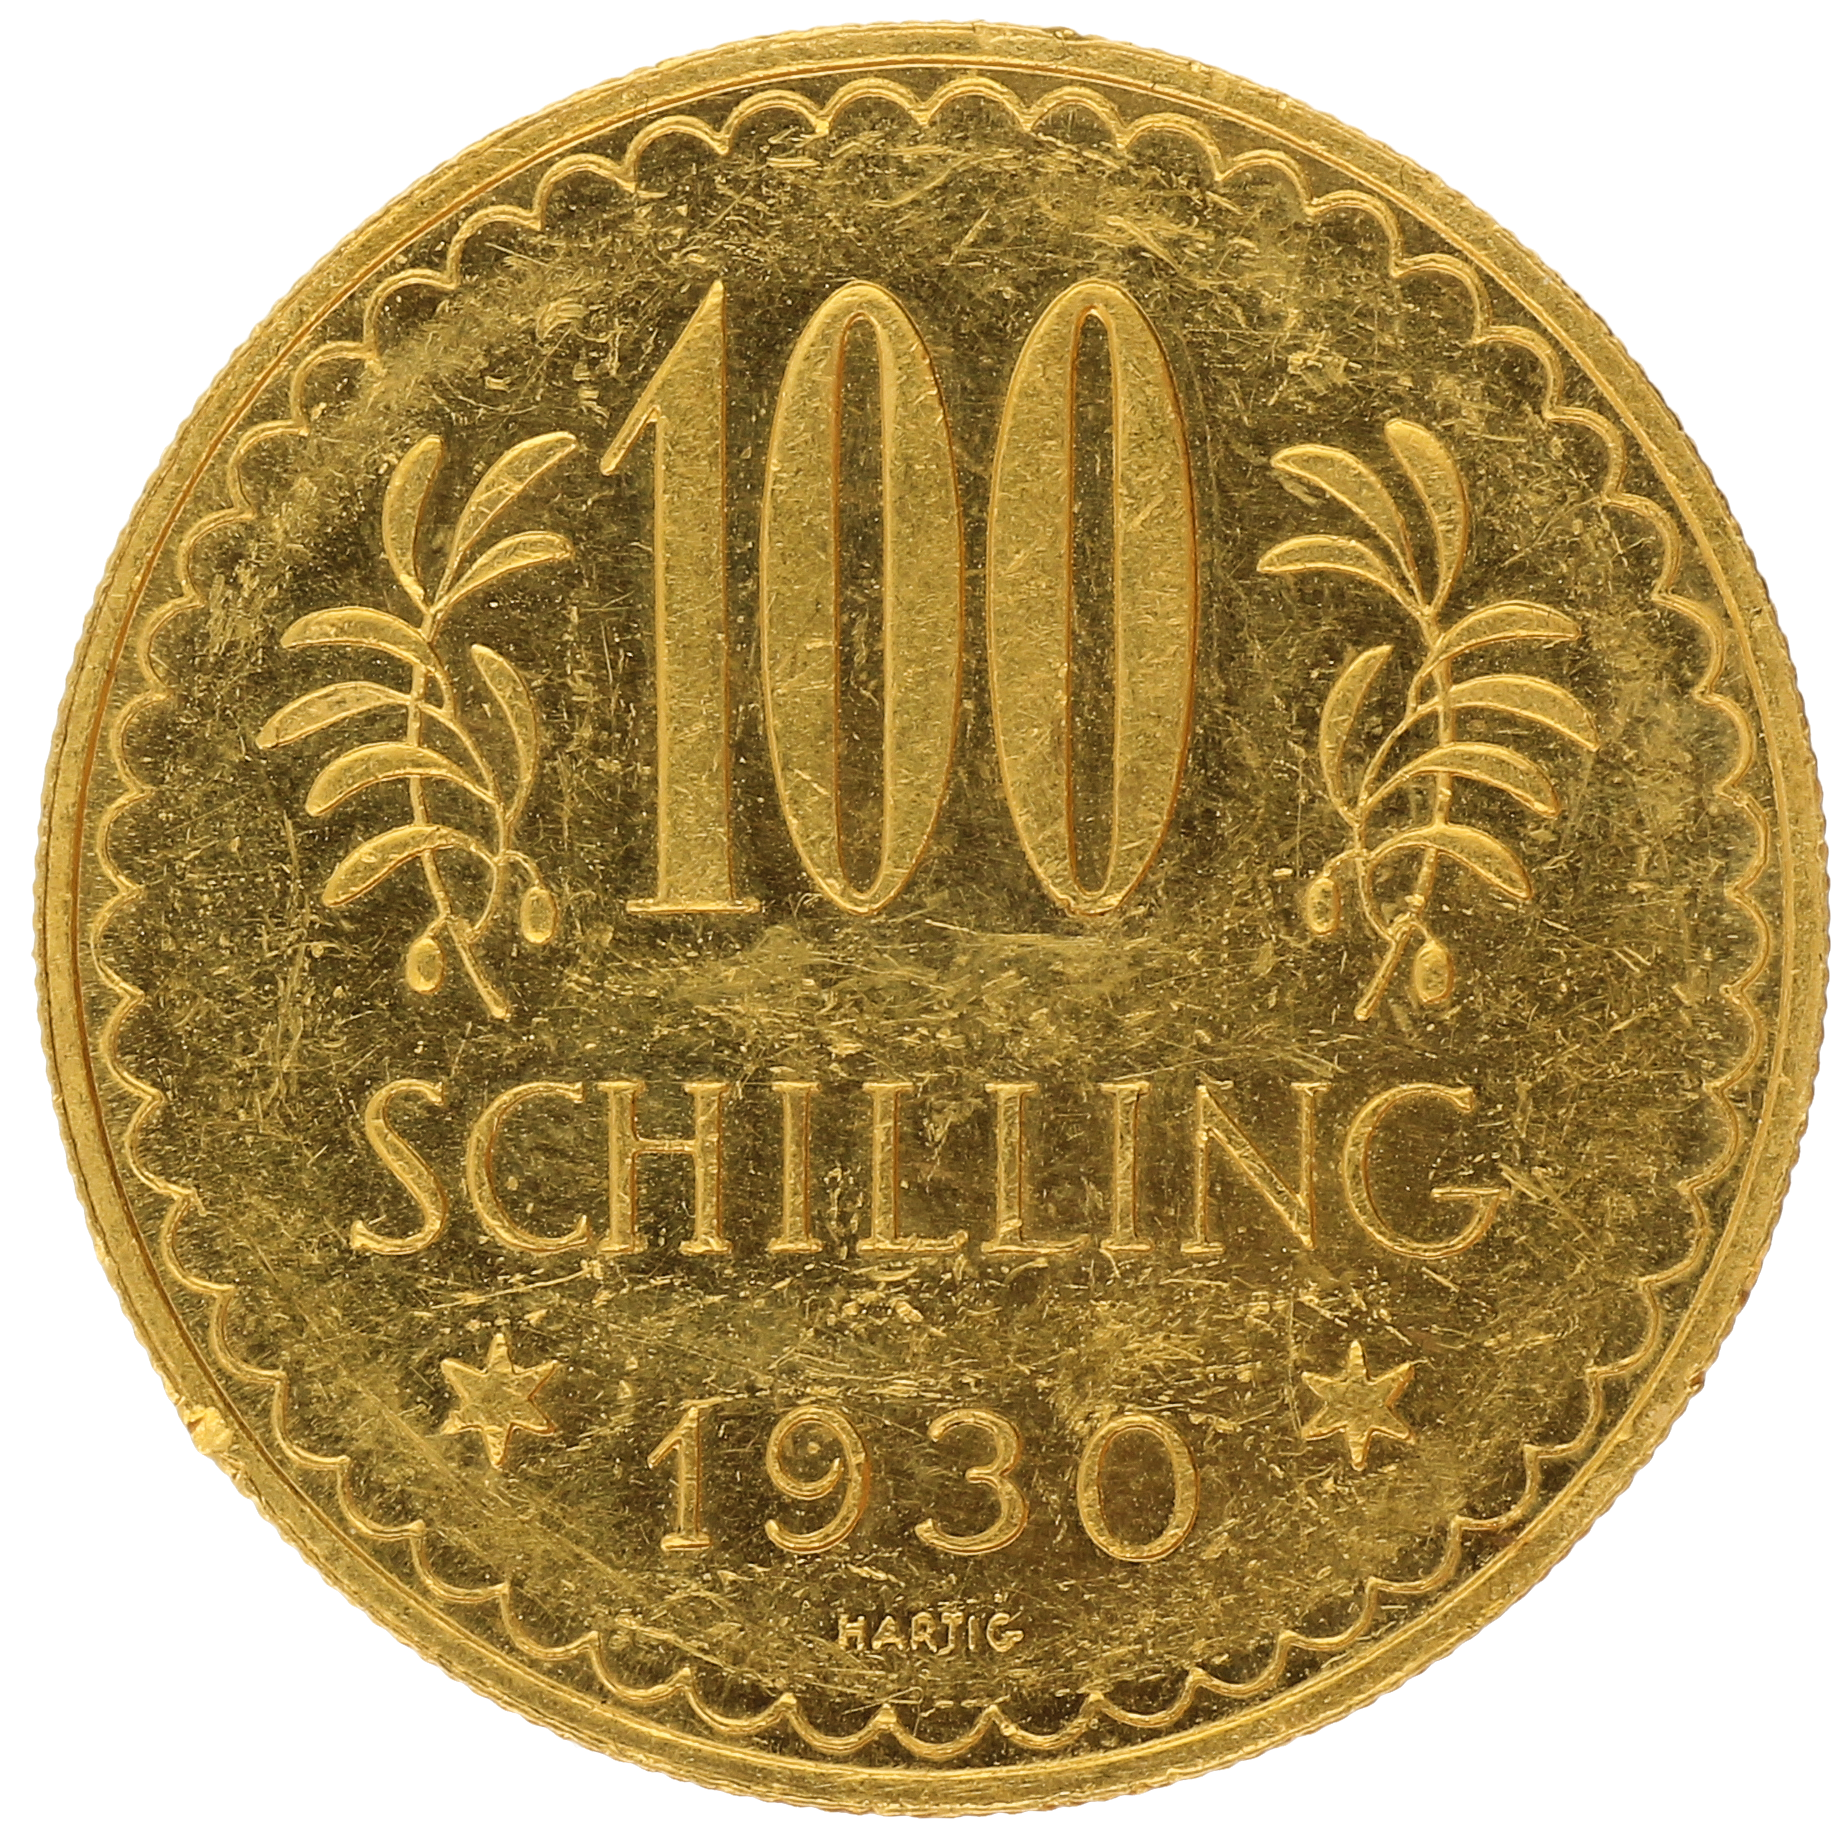 Austria - 100 schilling - 1930